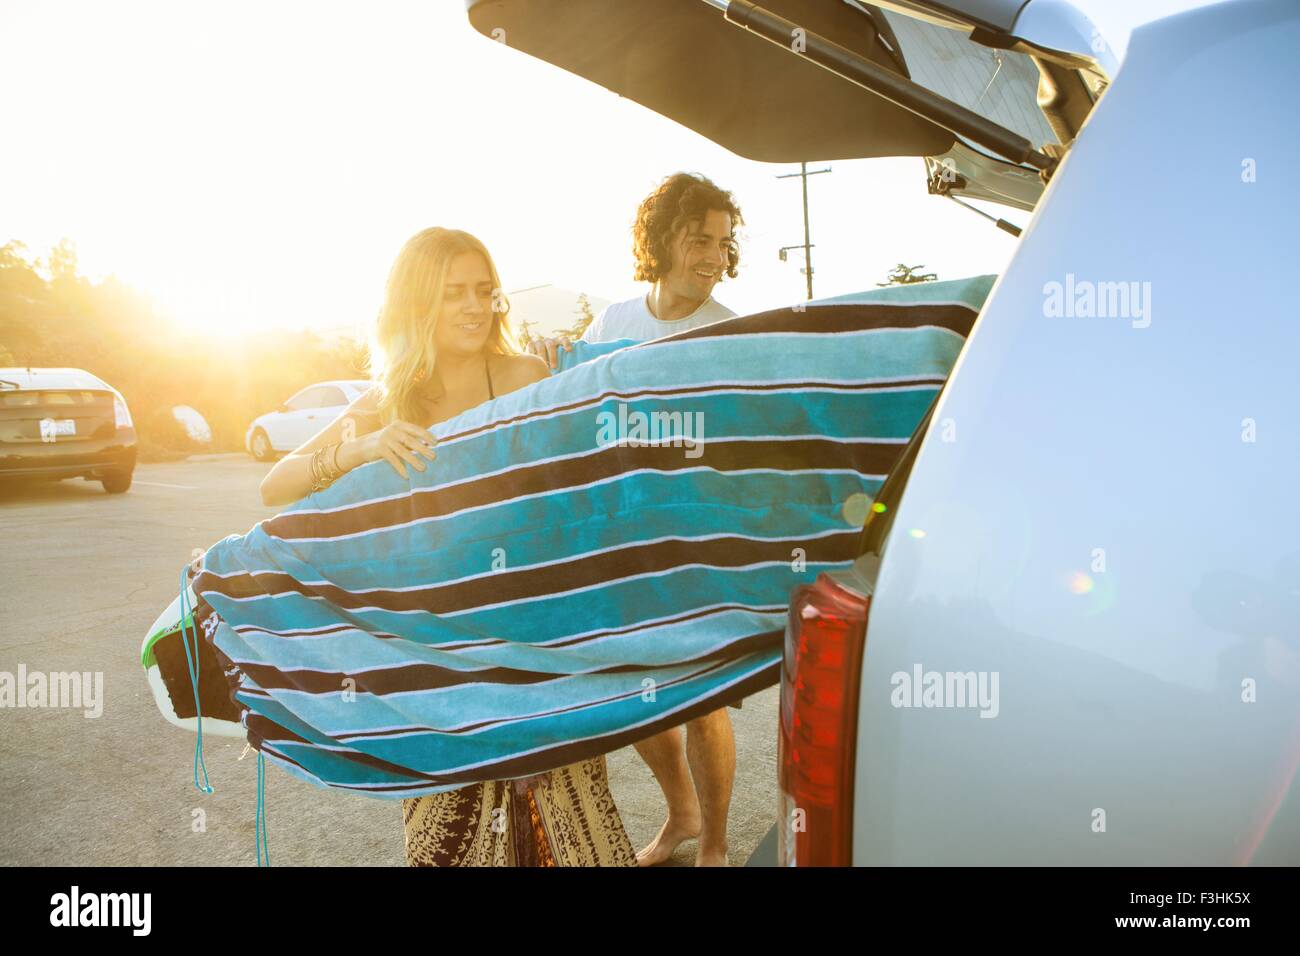 Giovane prendendo le tavole da surf dal bagagliaio della vettura Foto Stock